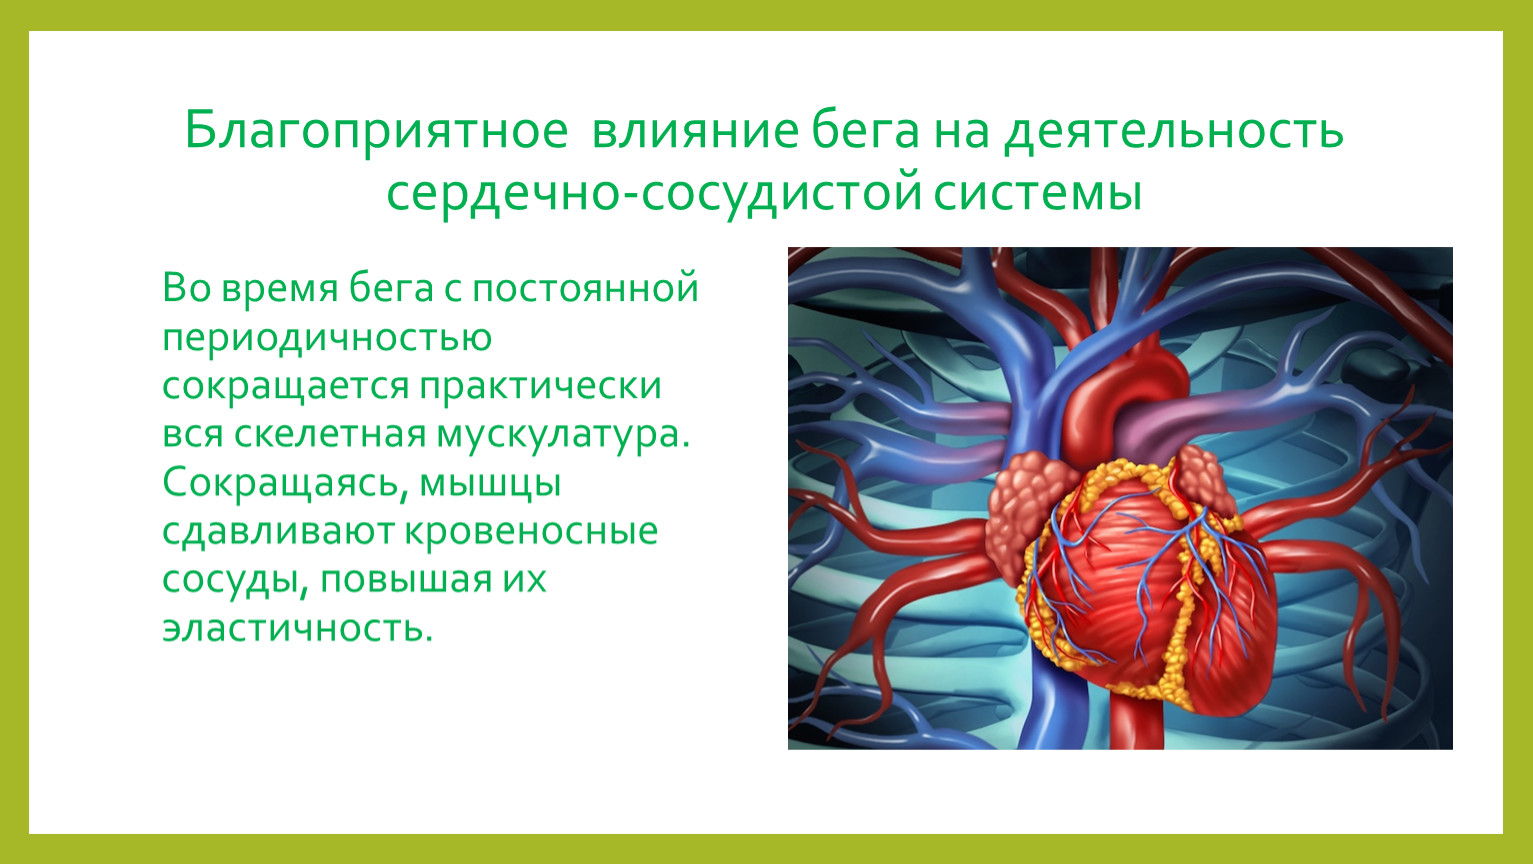 Ферменты сердца. Влияние на сердечно-сосудистую систему. Влияние бега на сердечно-сосудистую систему. Благоприятное влияние на сердечно-сосудистую систему. Влияние на кровеносную систему.